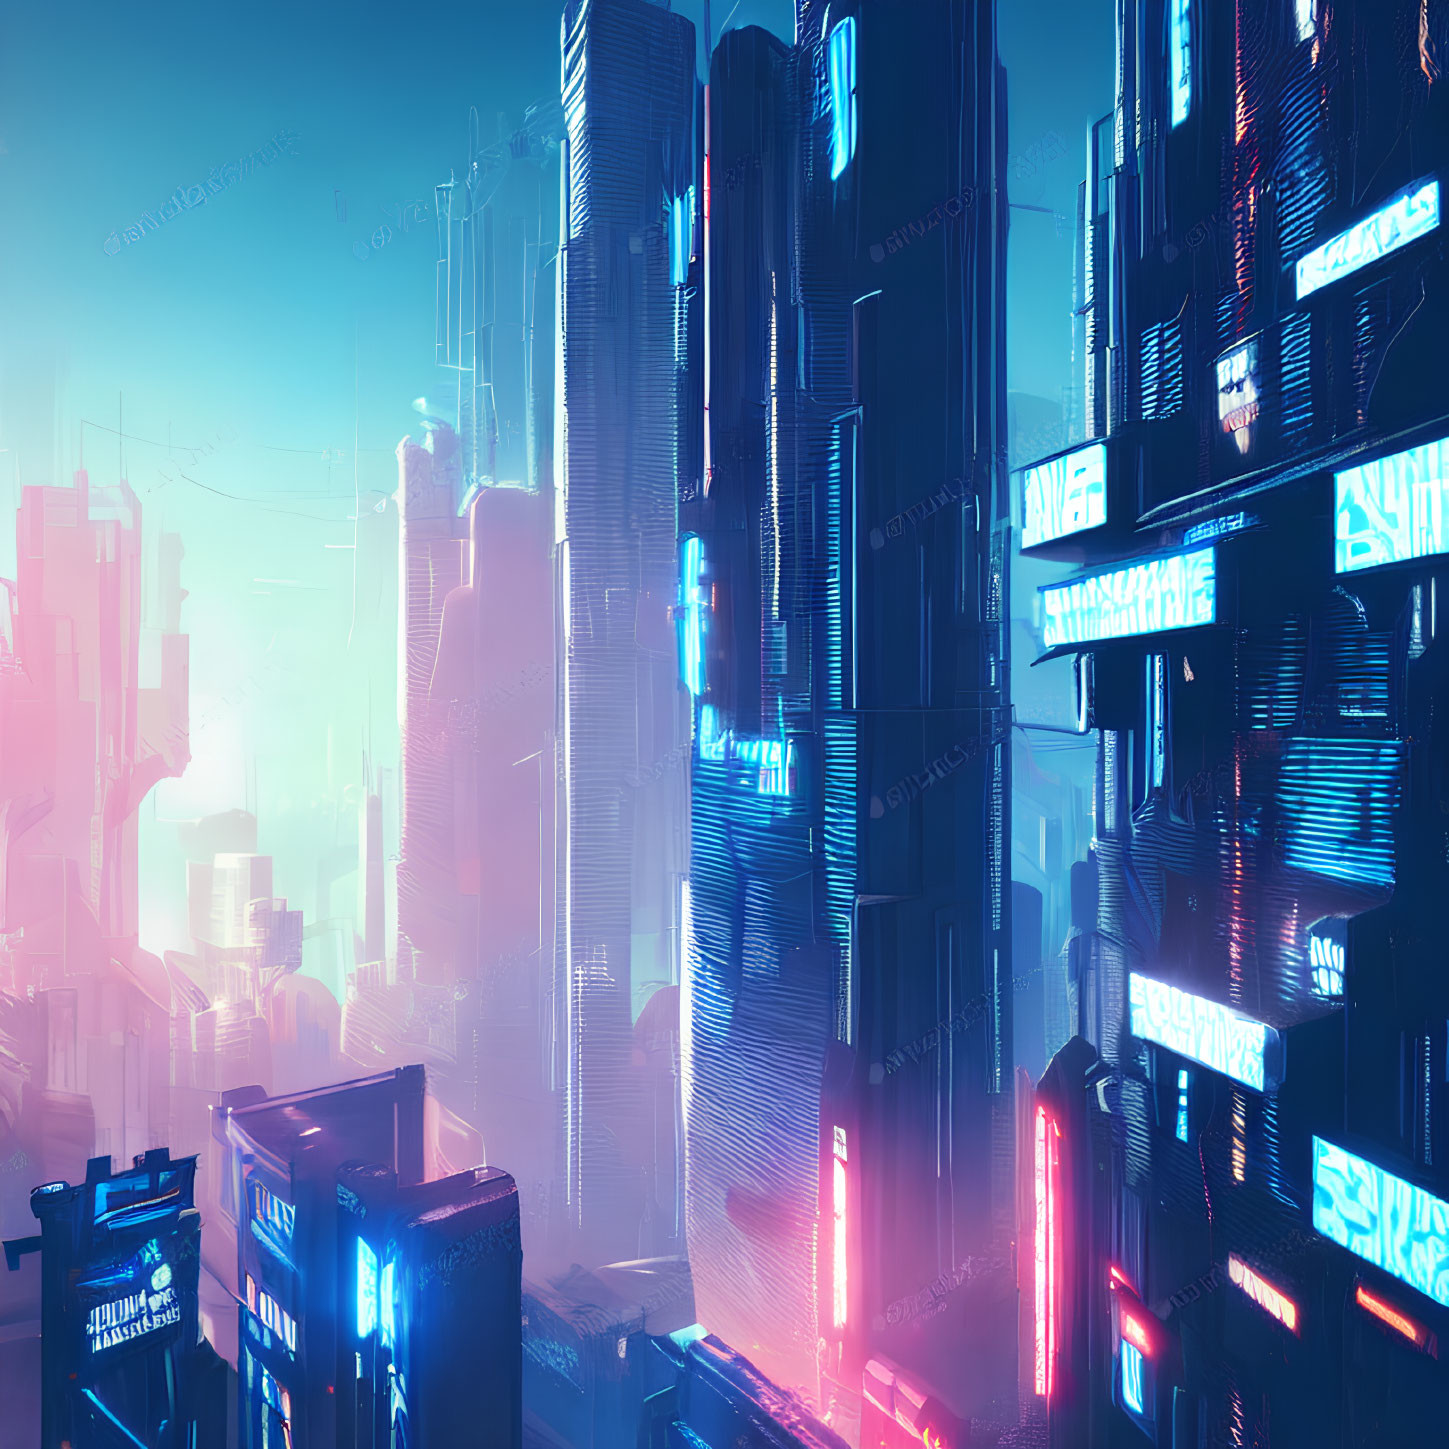 Neon-lit skyscrapers in futuristic cyberpunk cityscape